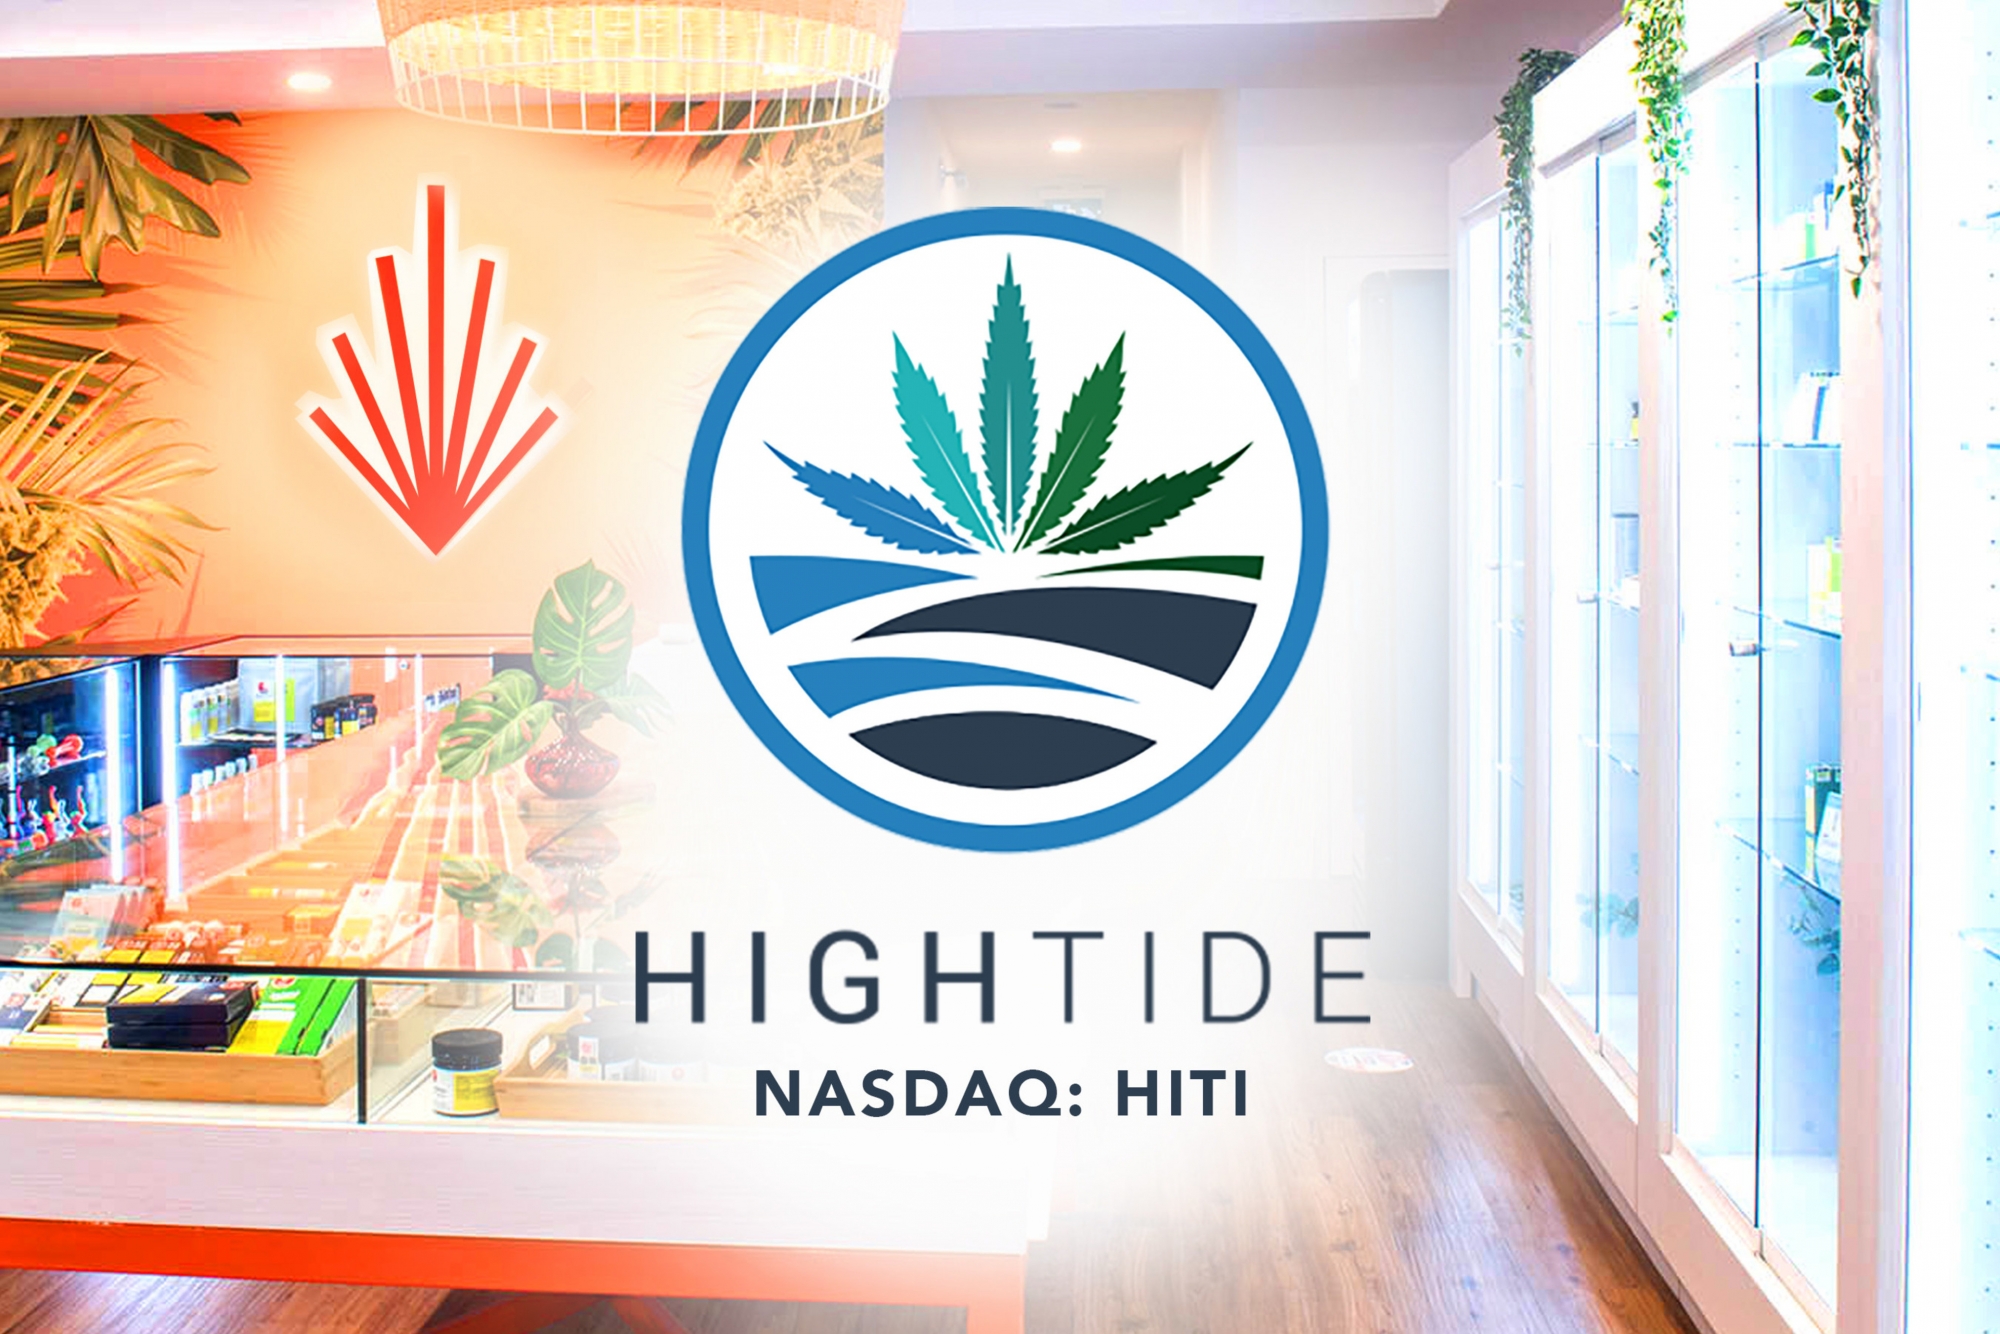 Hightide logo and image